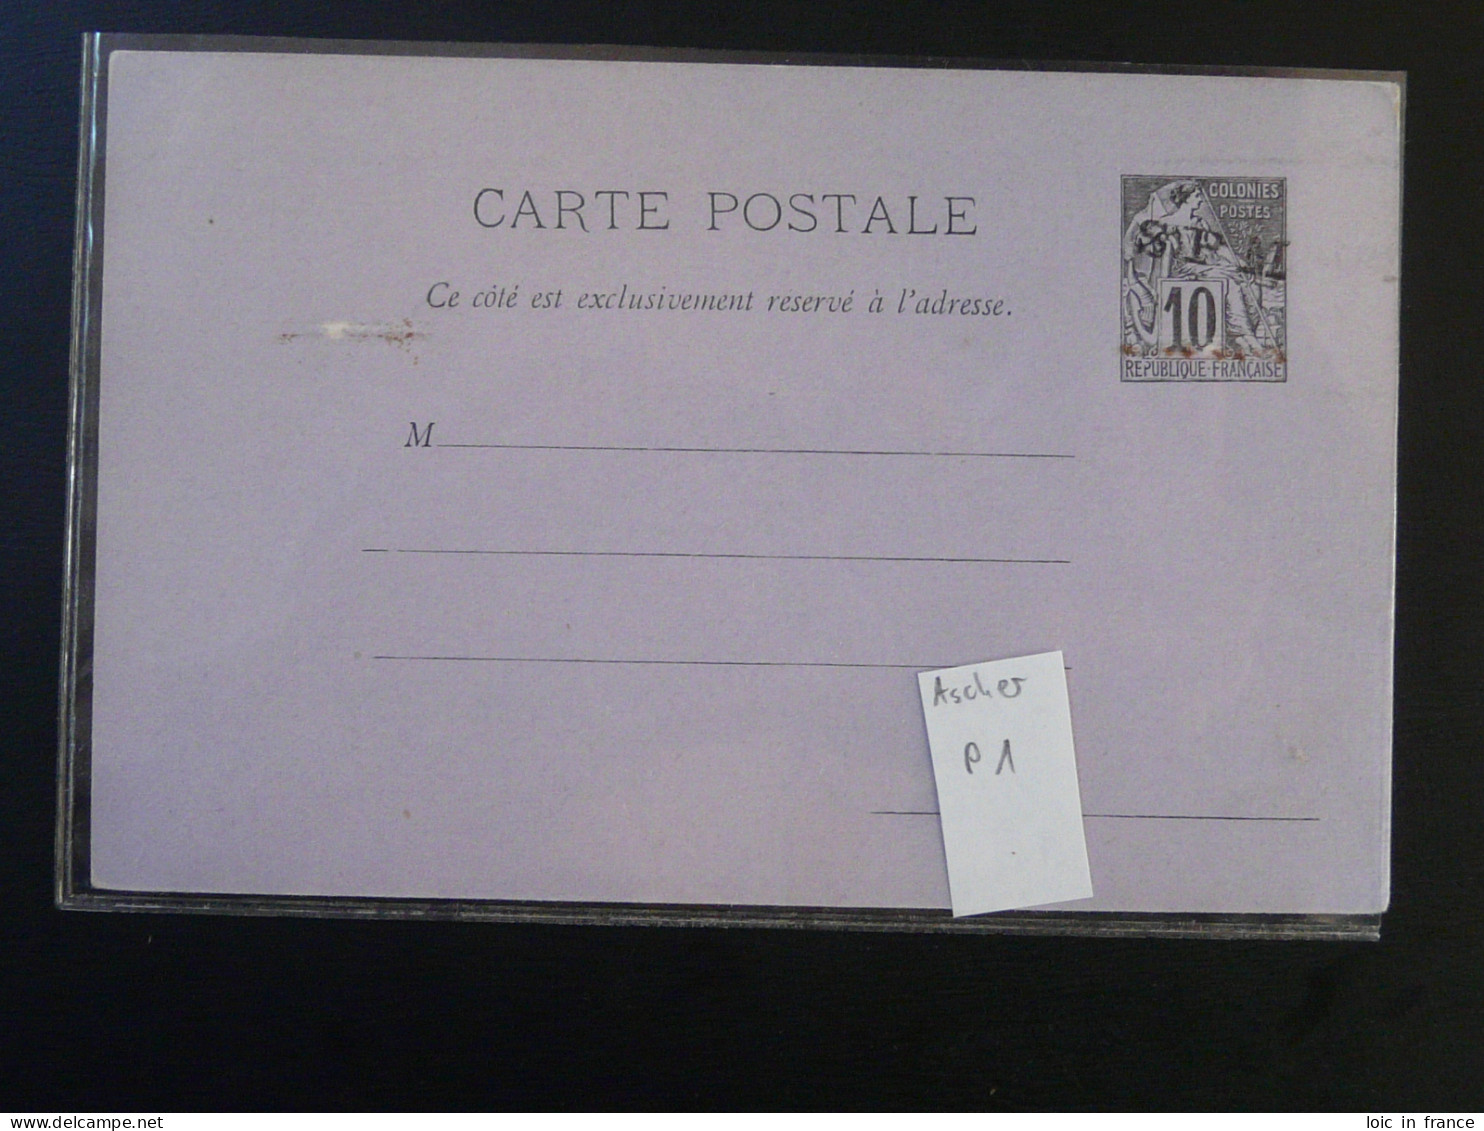 Entier Postal Carte Postale Alphée Dubois 10c Noir Sur Lilas N°1 St-Pierre Et Miquelon (ex 1) - Entiers Postaux